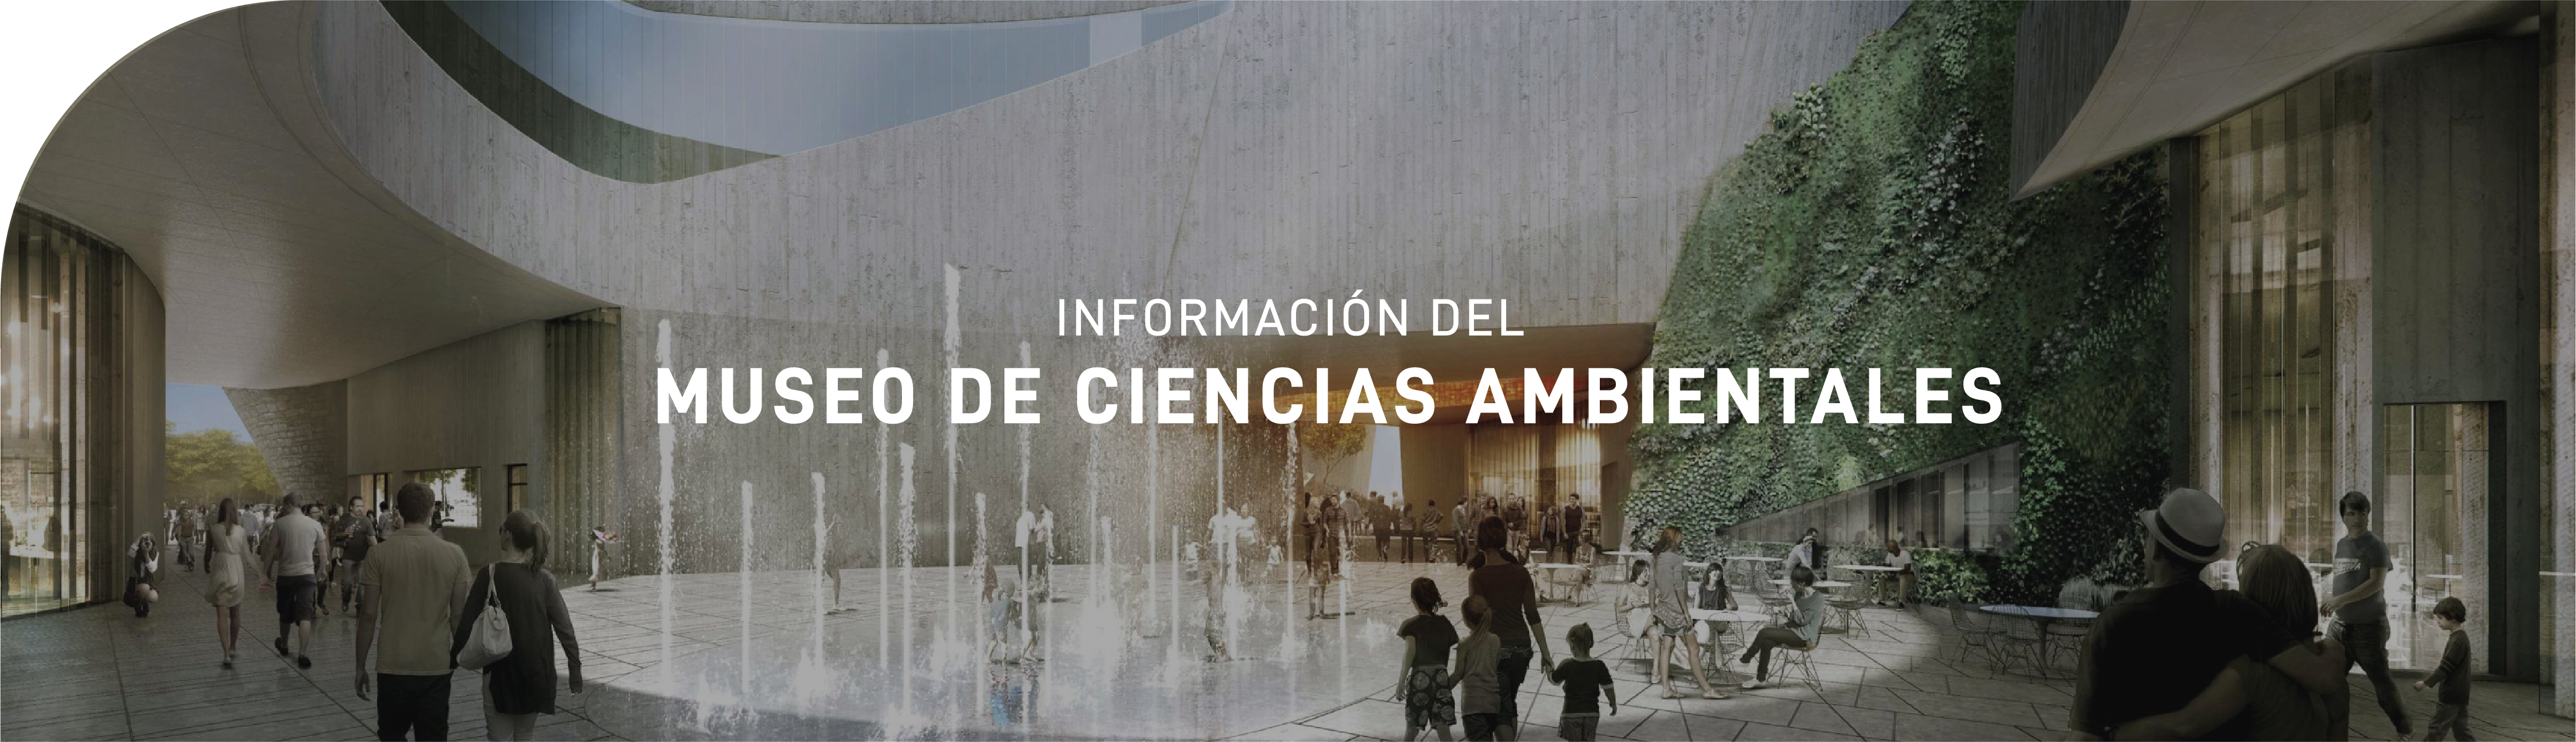 Información Museo Ciencias Ambientales